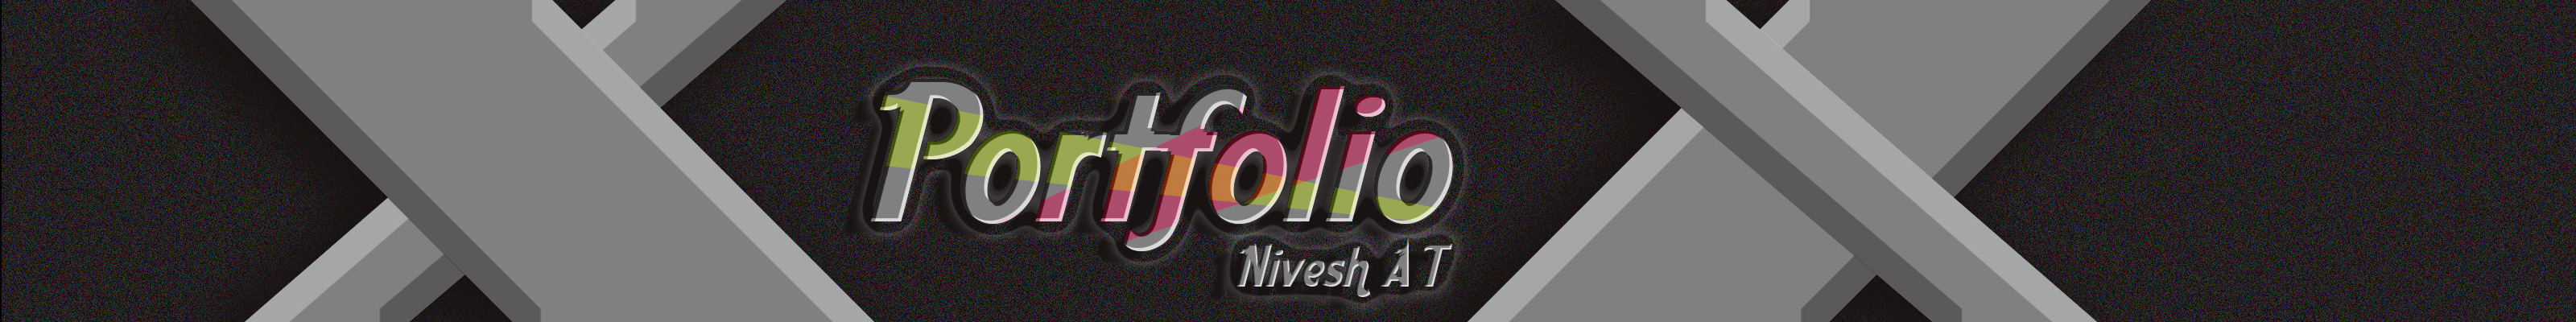 Nivesh AT's profile banner